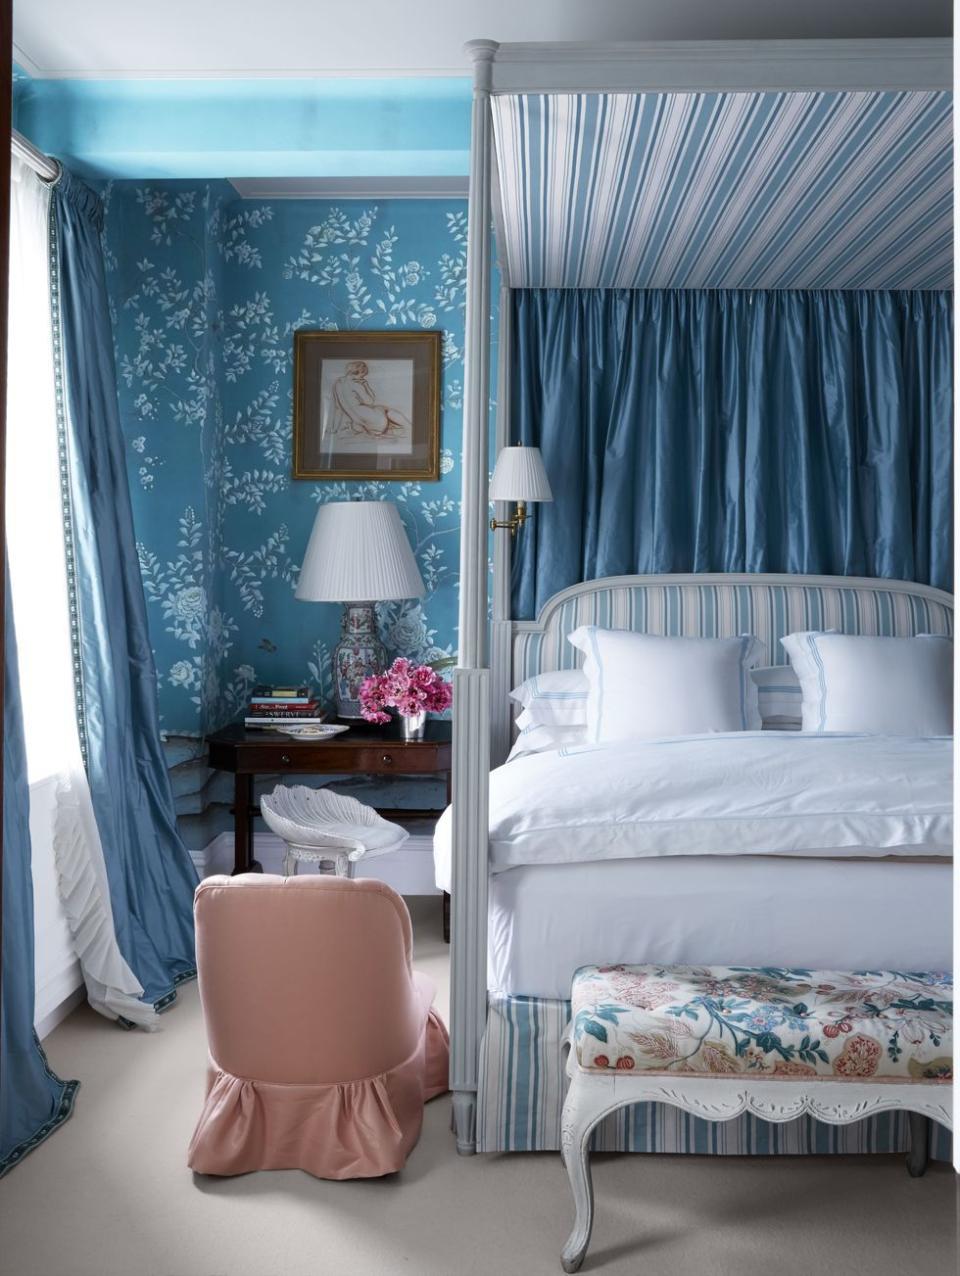 blue, white, and blush bedroom veranda relaxing bedroom decor